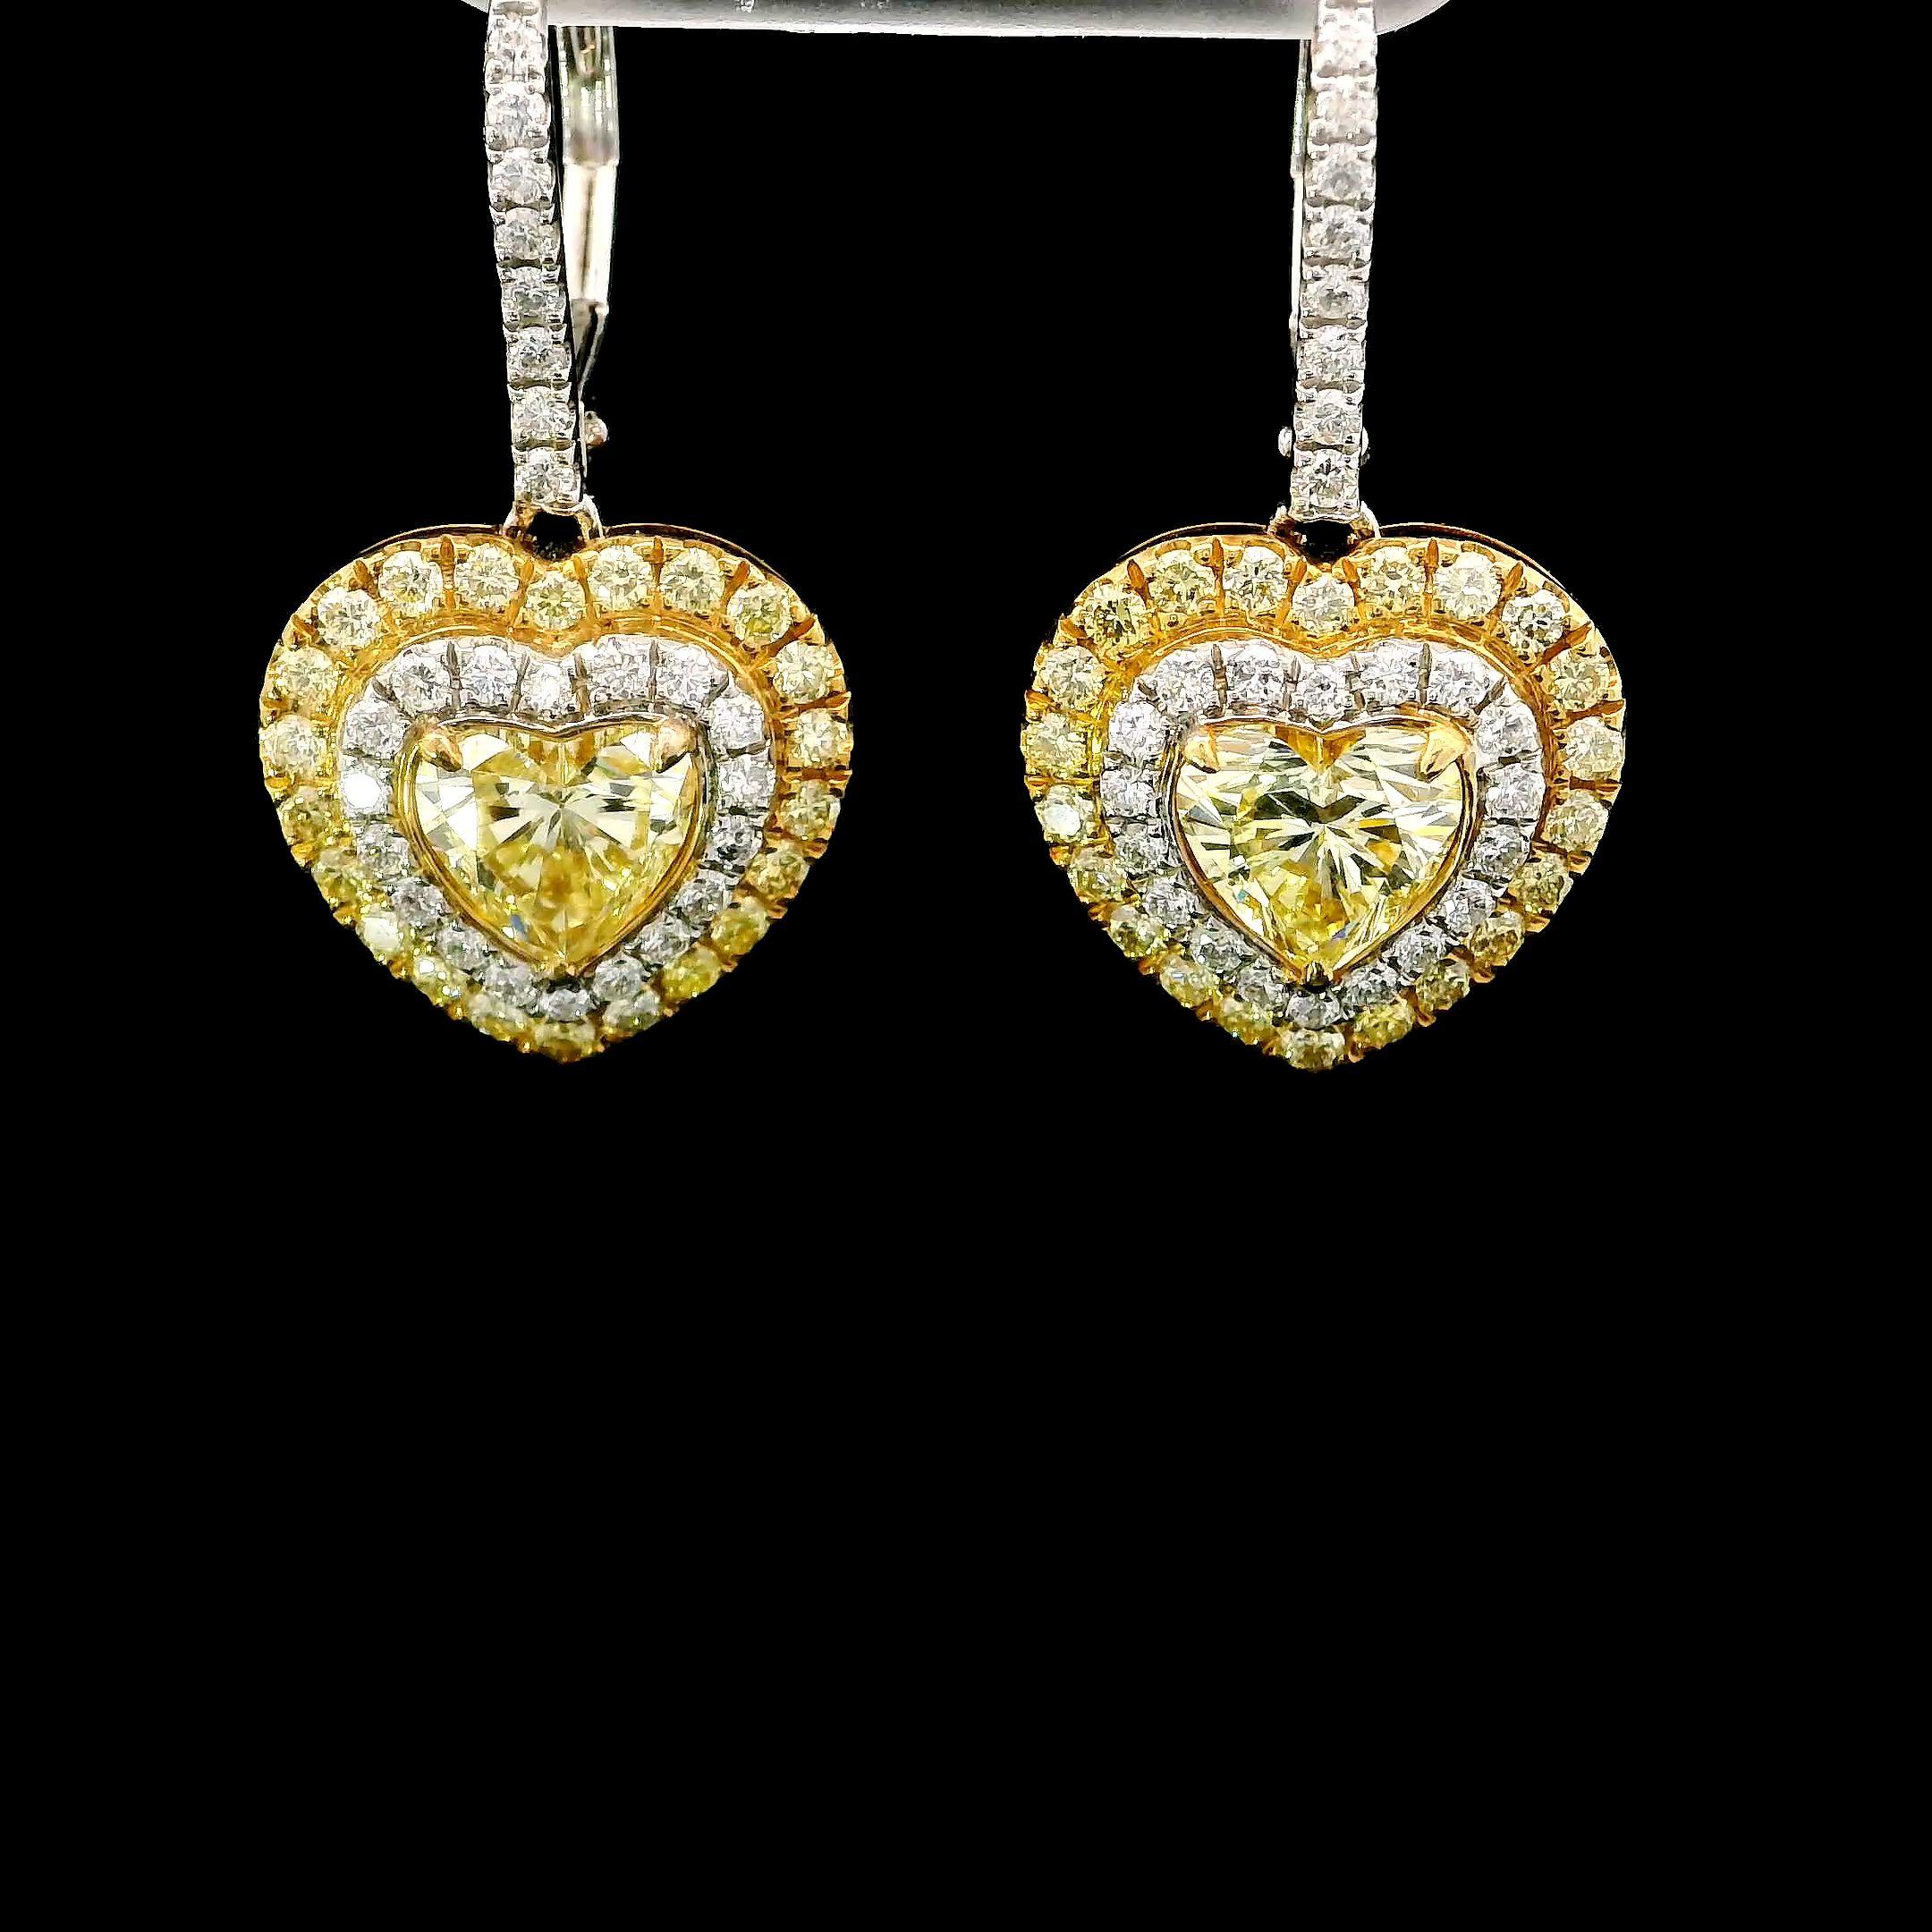 Heart Cut 1.66 Carat Fancy Yellow Diamond Earrings GIA Certified For Sale